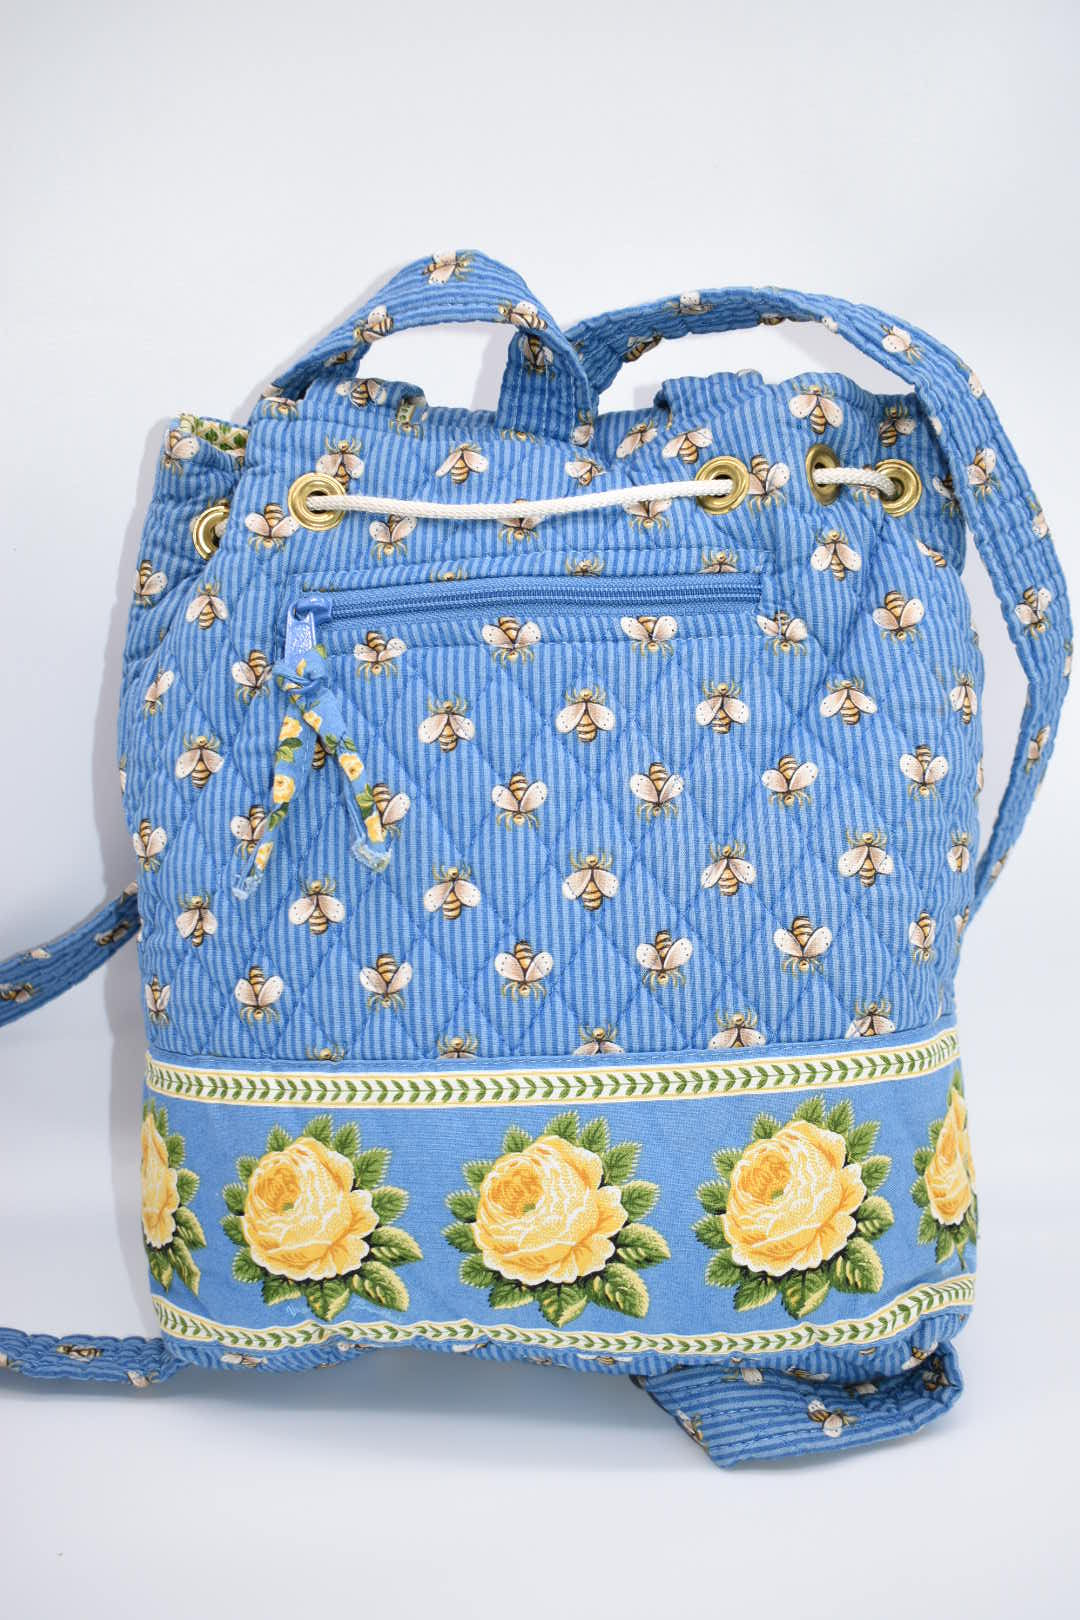 Vera Bradley "Mimi" Backpack in "Bees" Pattern